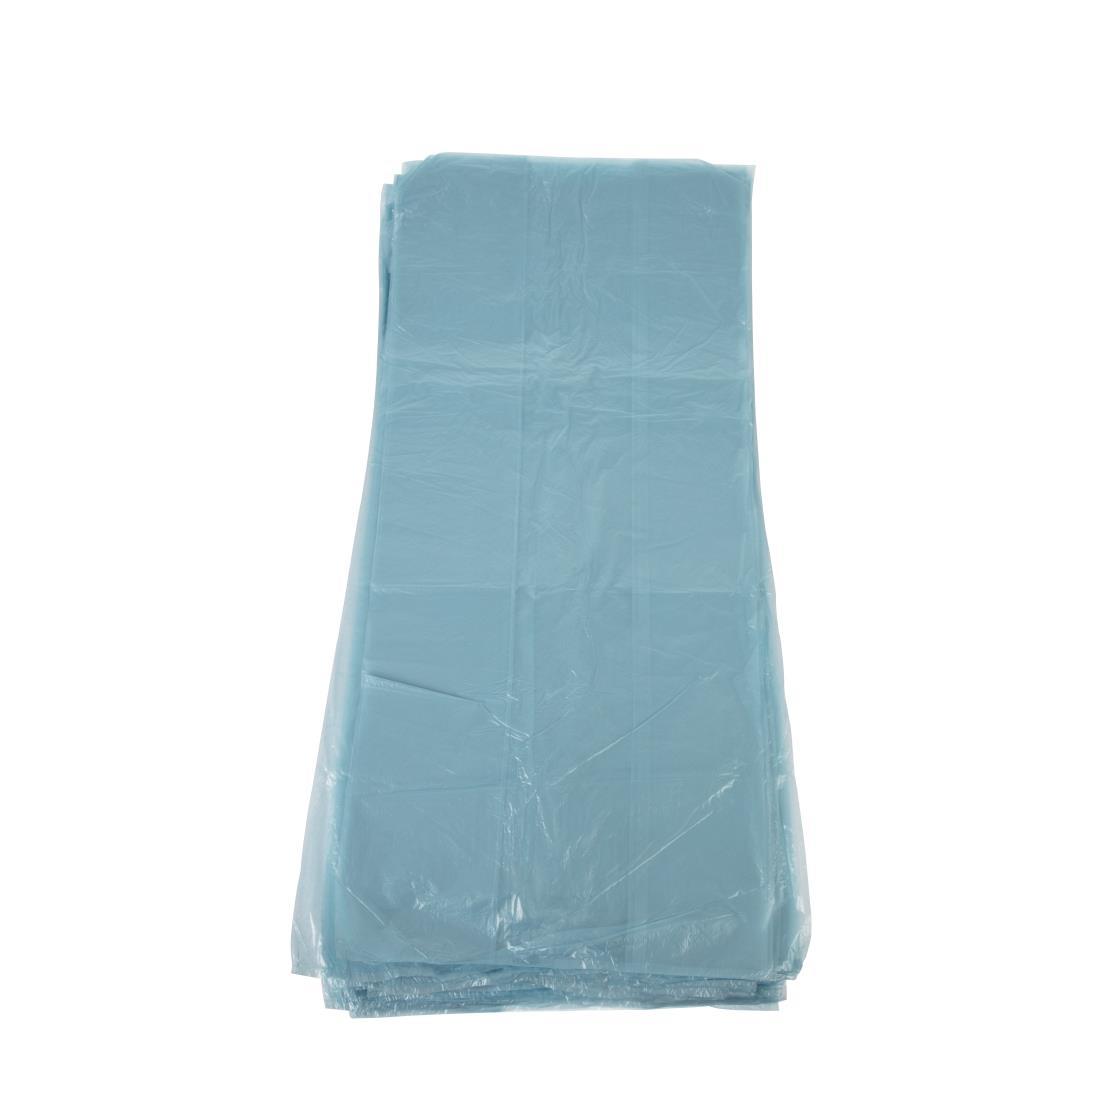 Jantex Large Medium Duty Blue Bin Bags 80Ltr (Pack of 200) - GK686  - 3